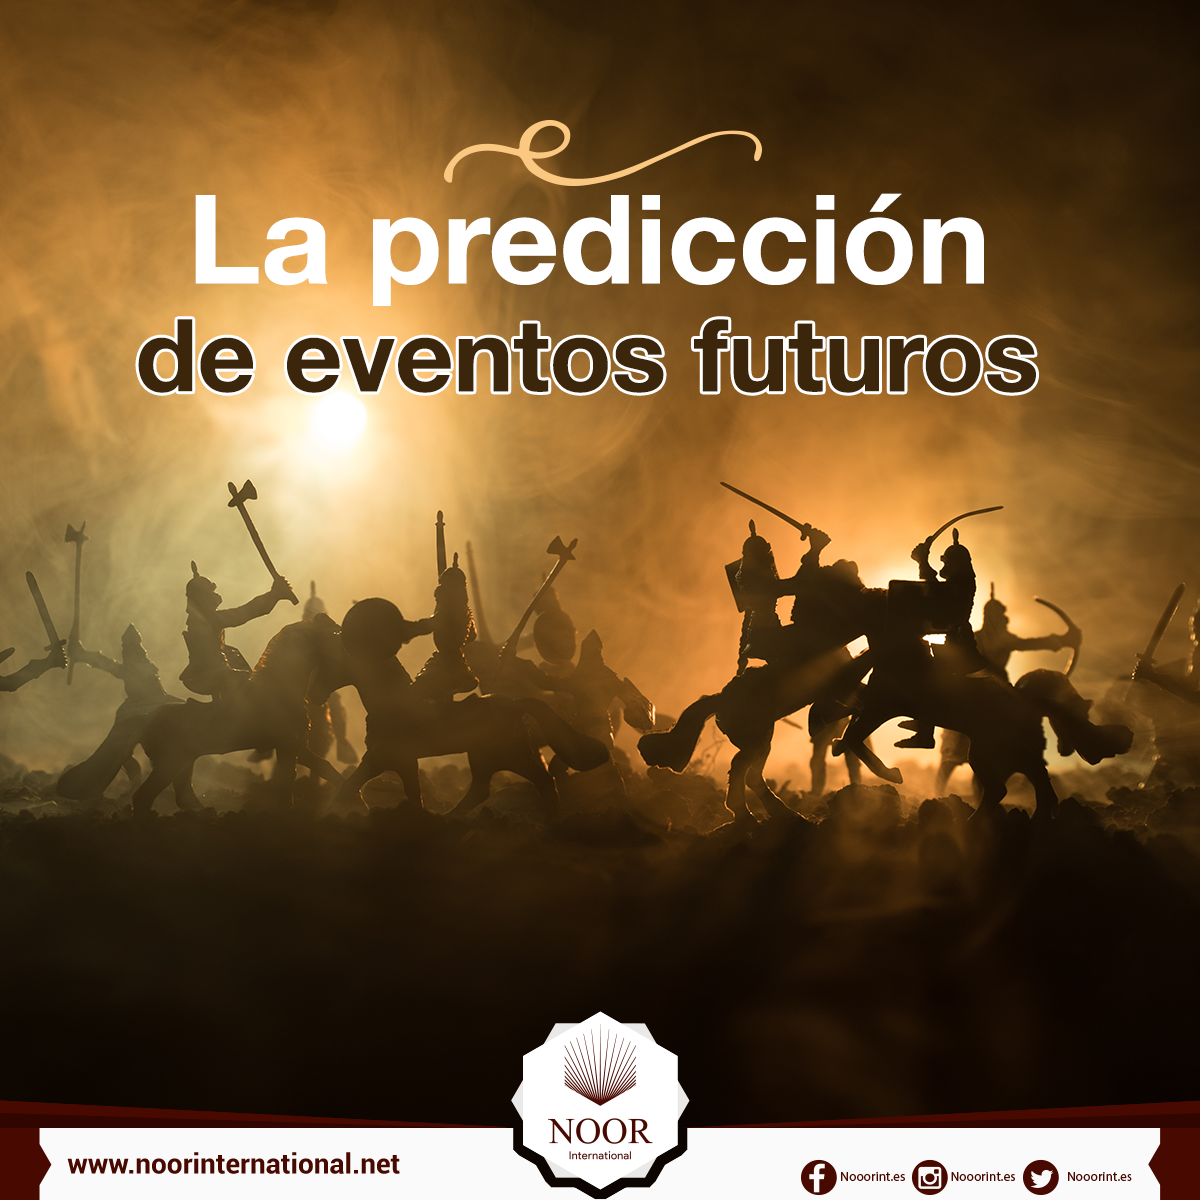 La predicción de eventos futuros